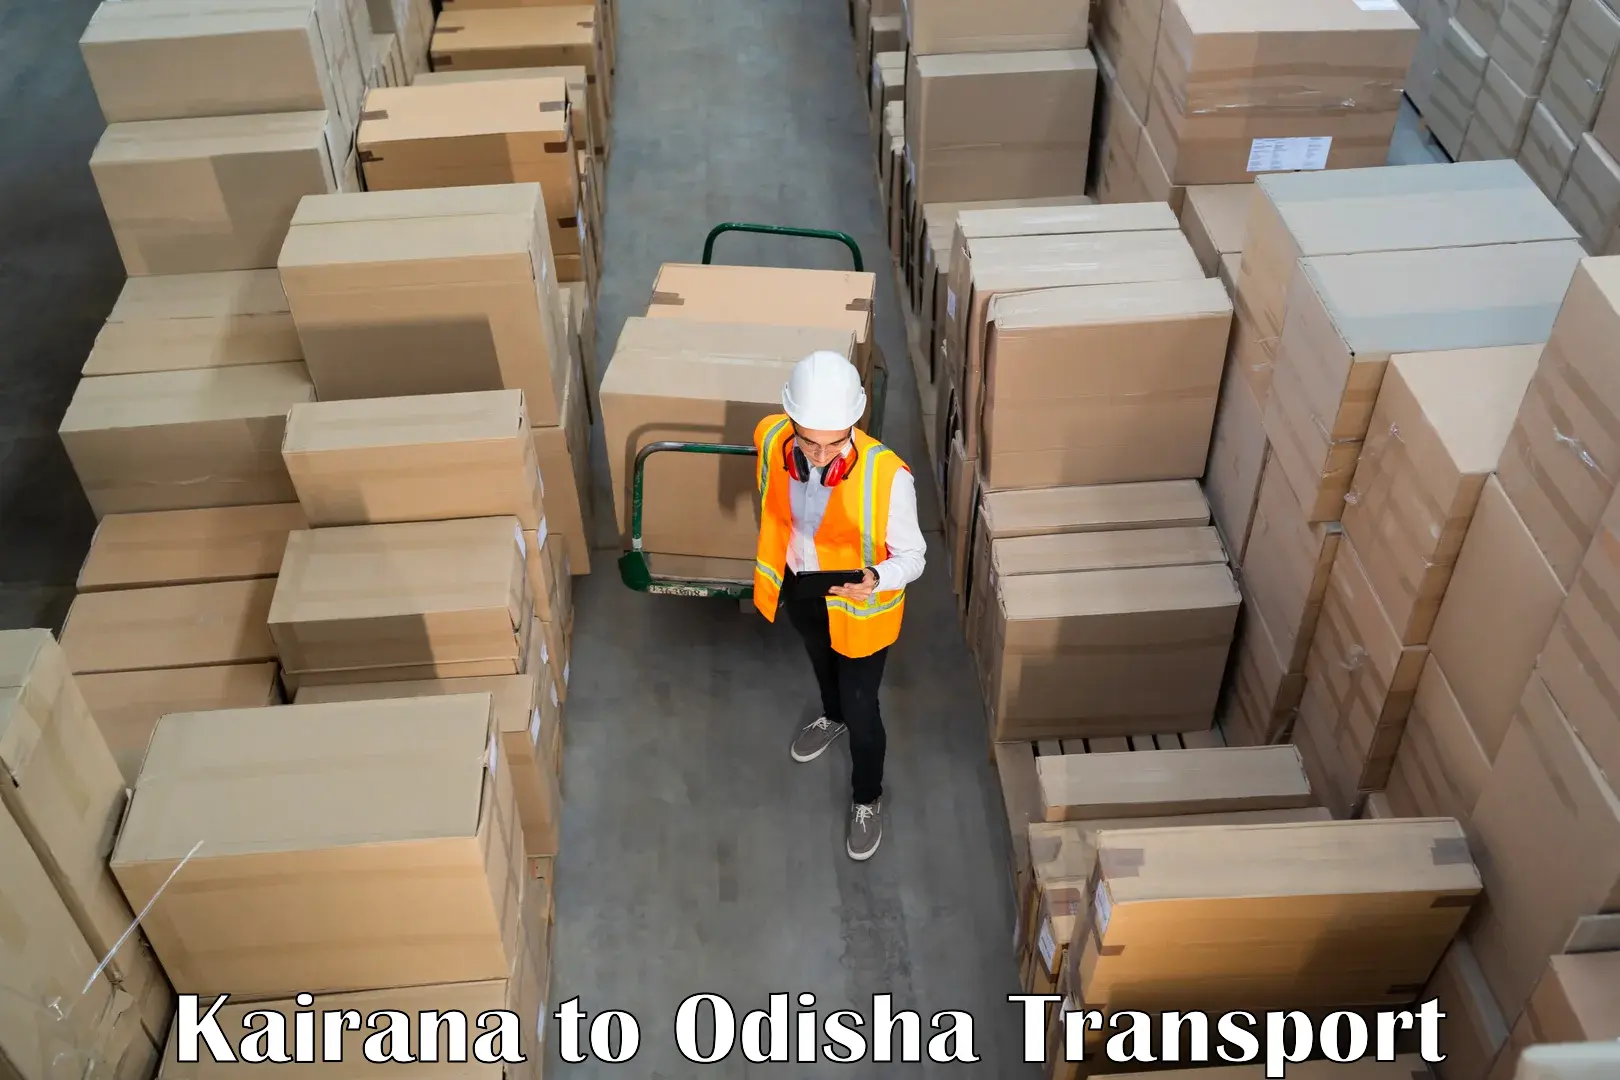 Part load transport service in India Kairana to Kesinga